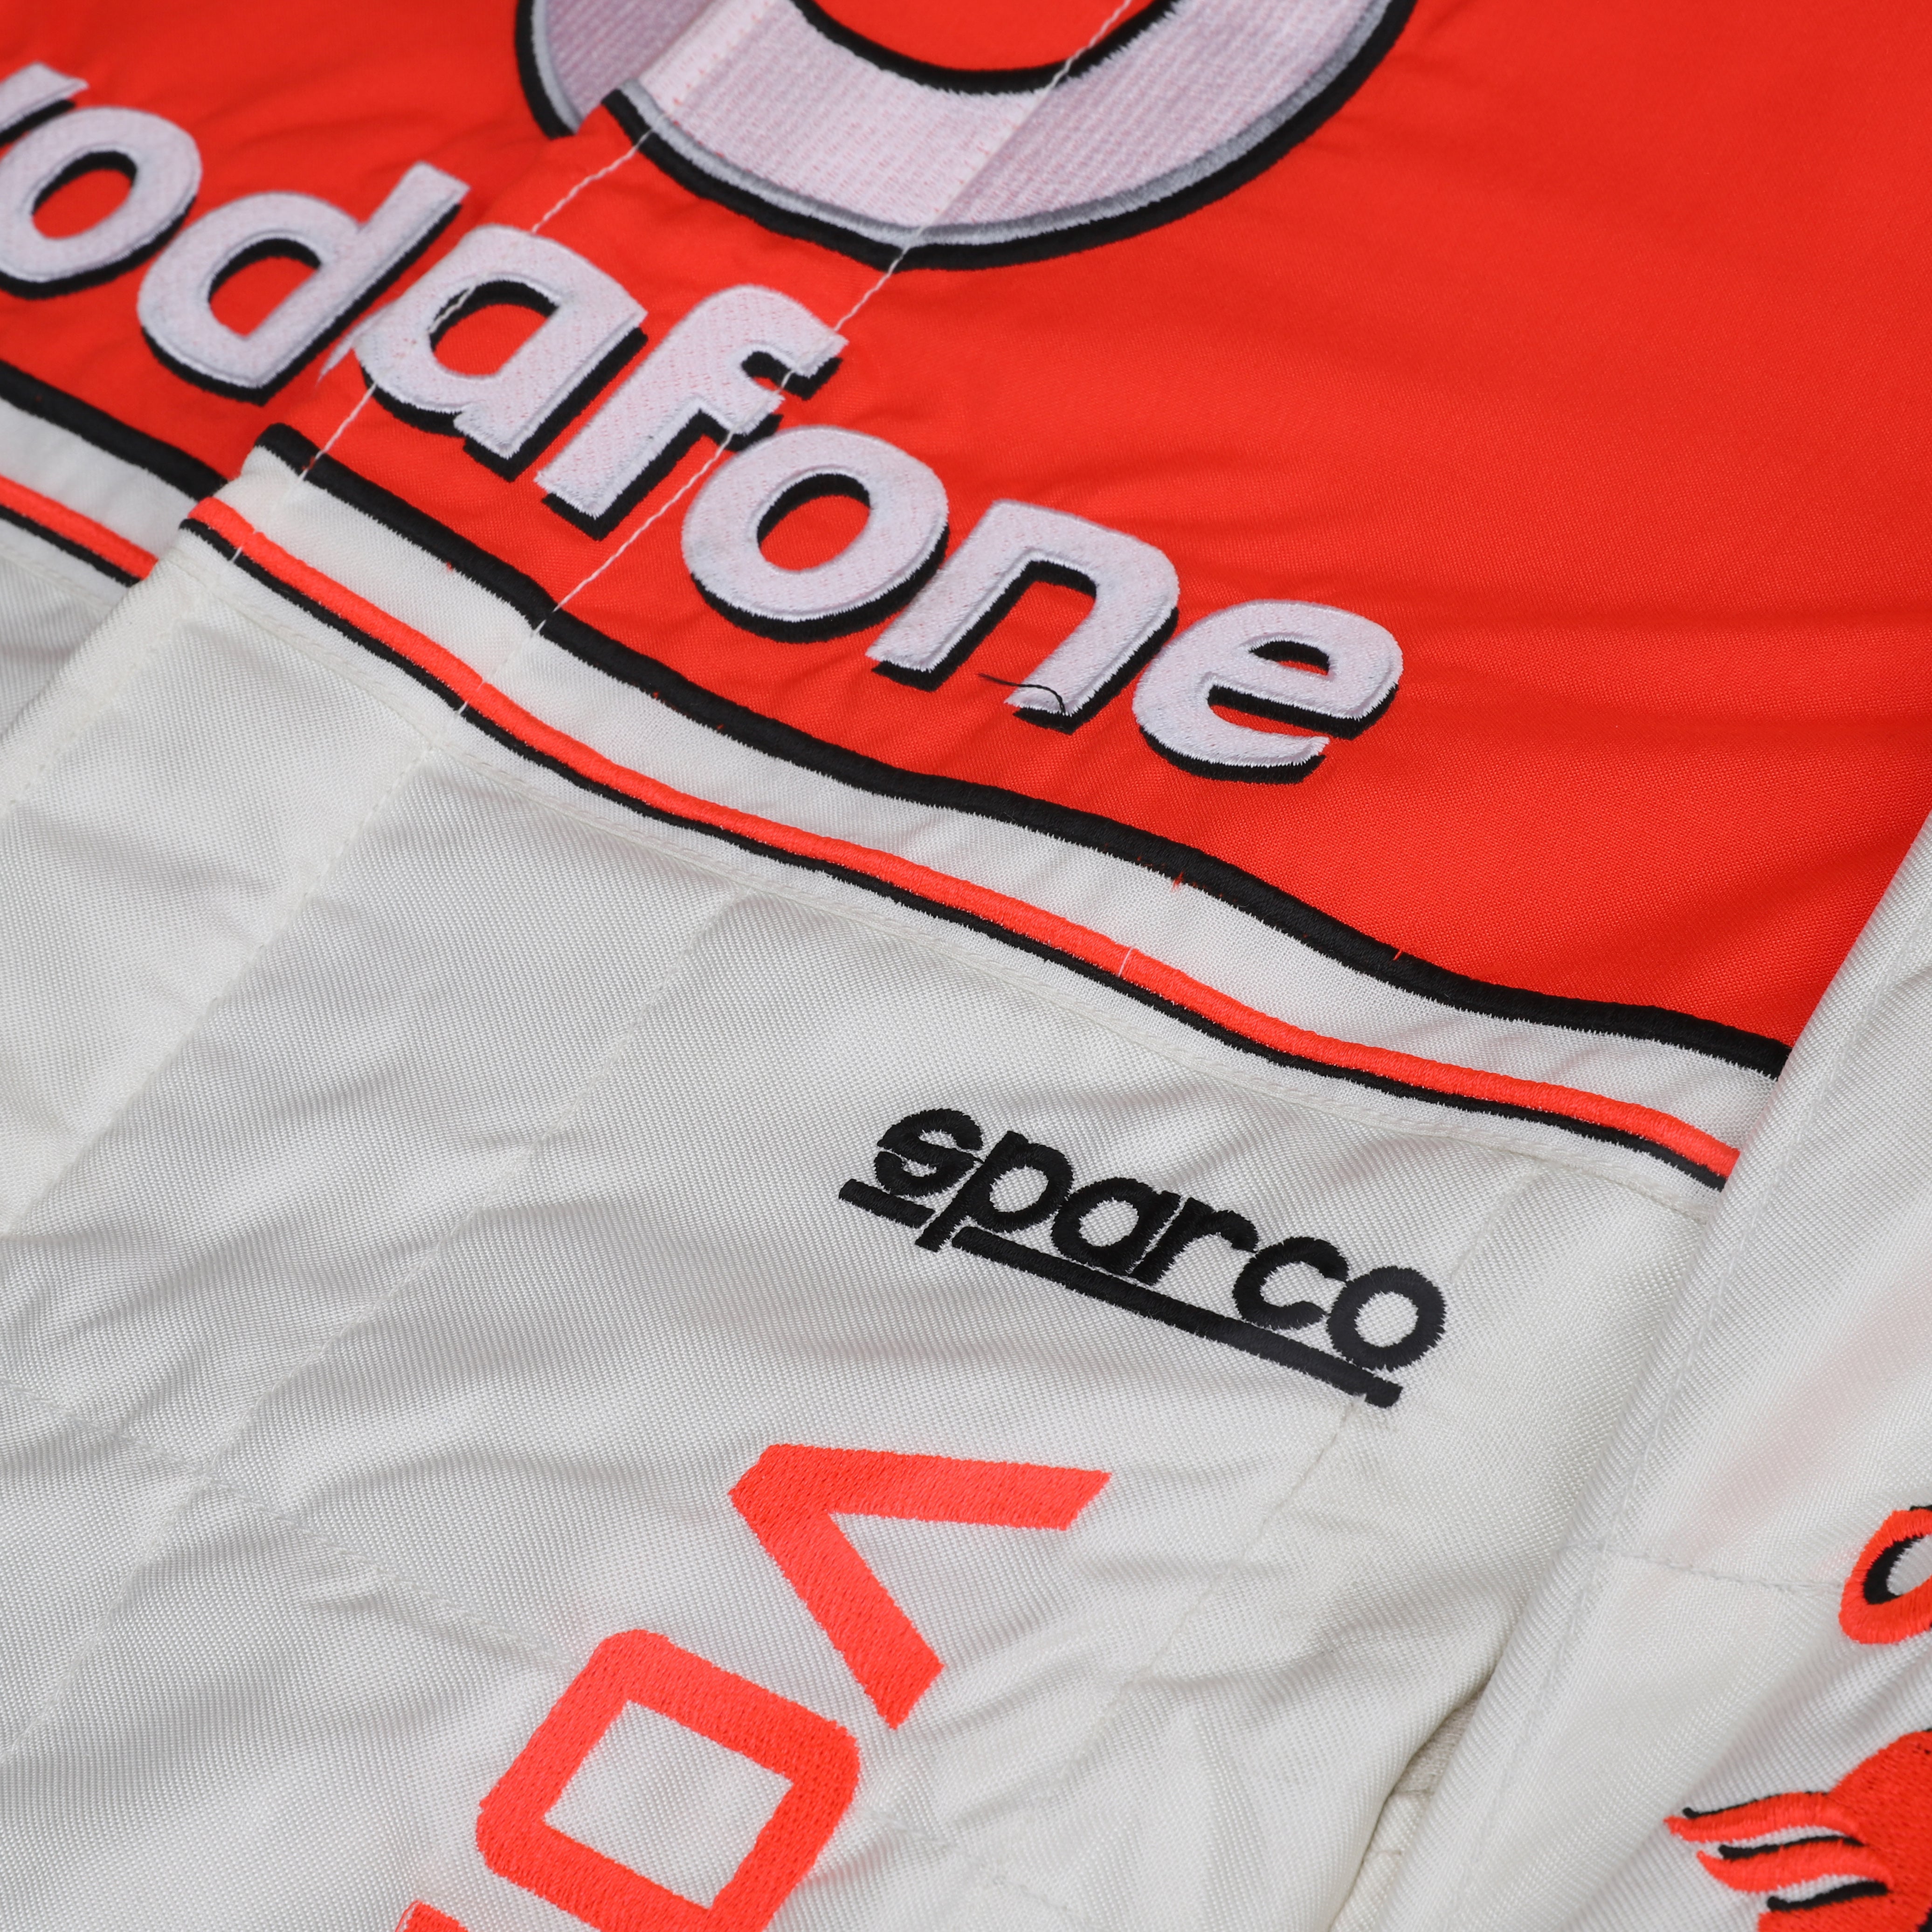 Jenson Button 2013 Replica McLaren F1 Team Race Suit 